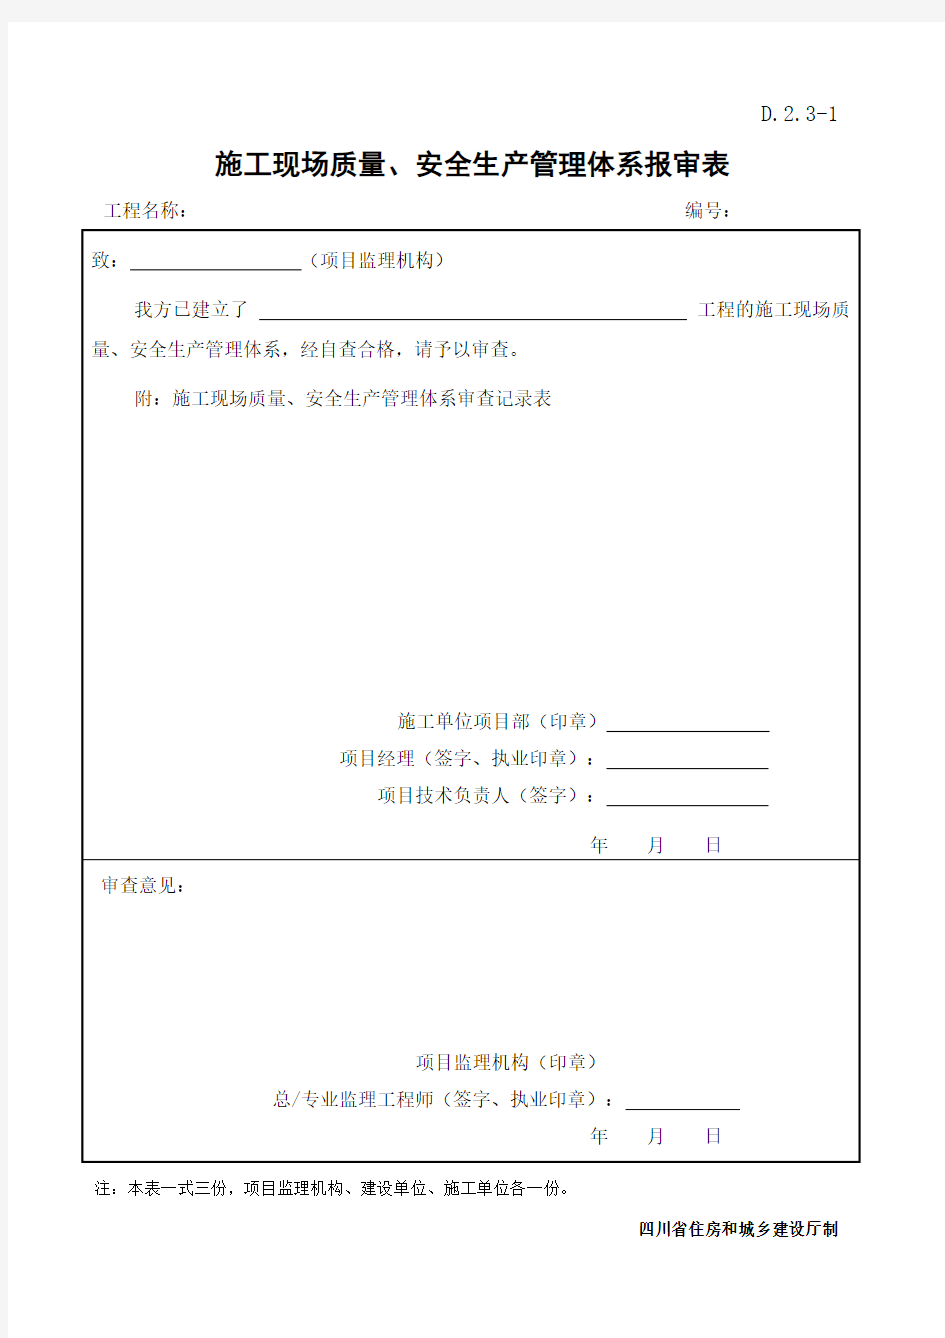 D.2.3   施工现场质量、安全生产管理体系报审表样表(四川省)